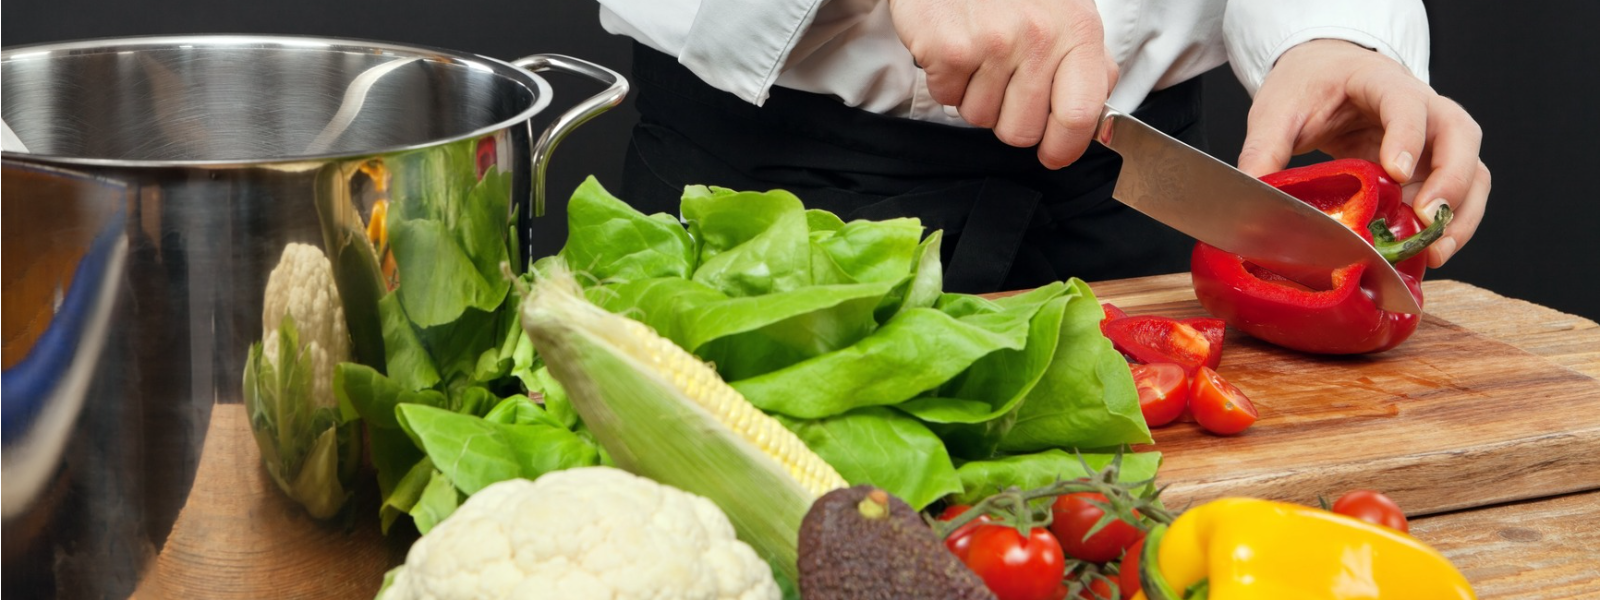 KARISMA FOOD OÜ - Karisma Food OÜ on 2011 aastal asutatud toidukaupade hulgimüügi ettevõte, mis on spetsialiseerunud ...